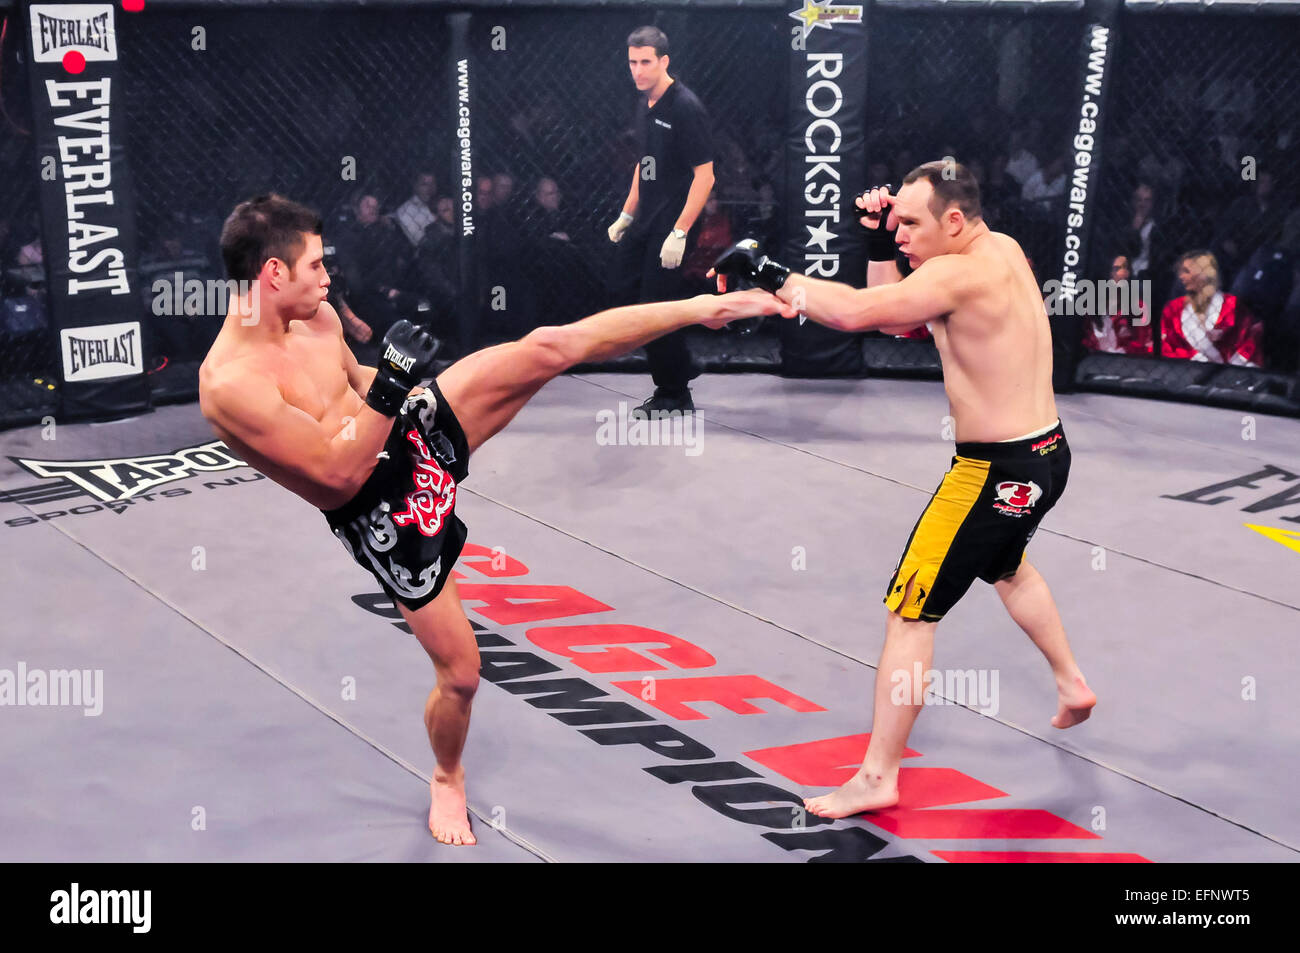 MMA-Kämpfer landet einen high Kick zum Arm seines Gegners. Stockfoto